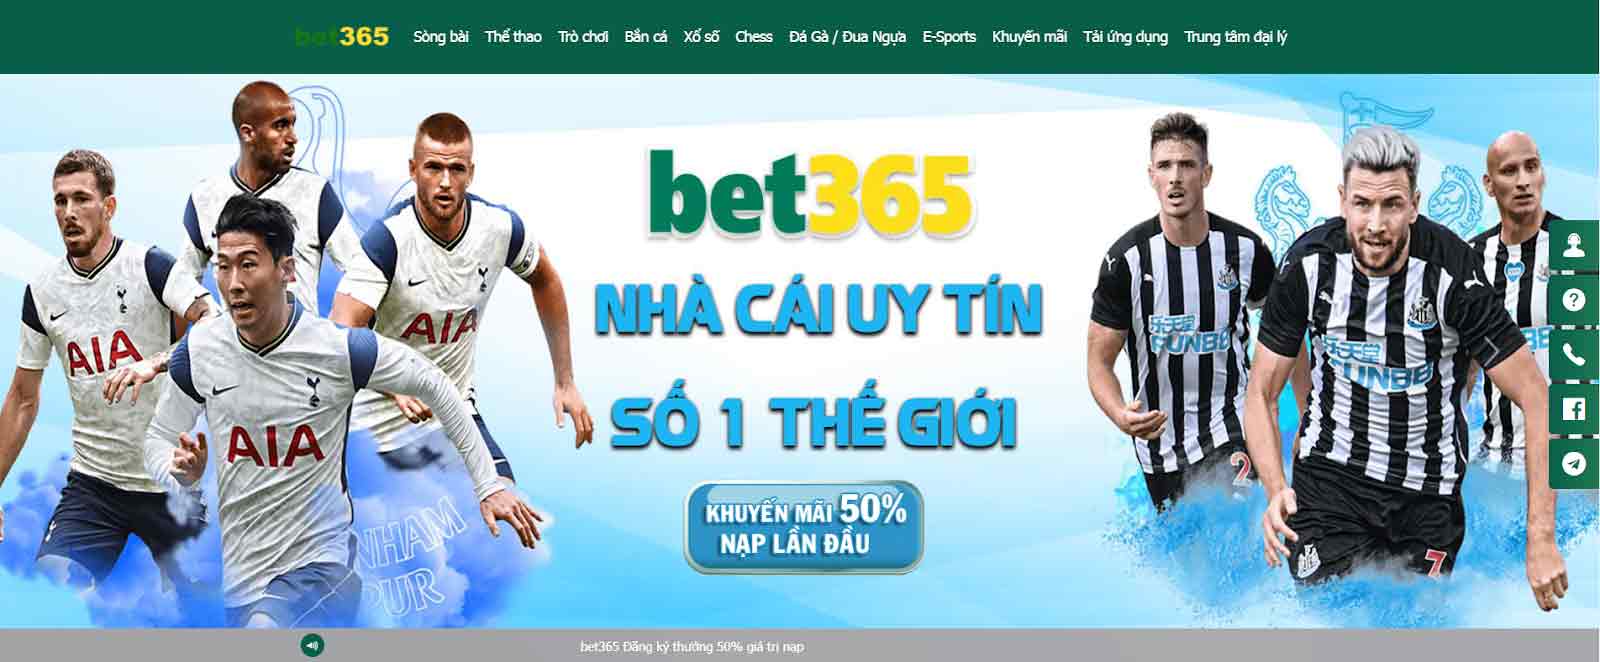 Bet365 – Cá cược thể thao sòng bạc cao cấp